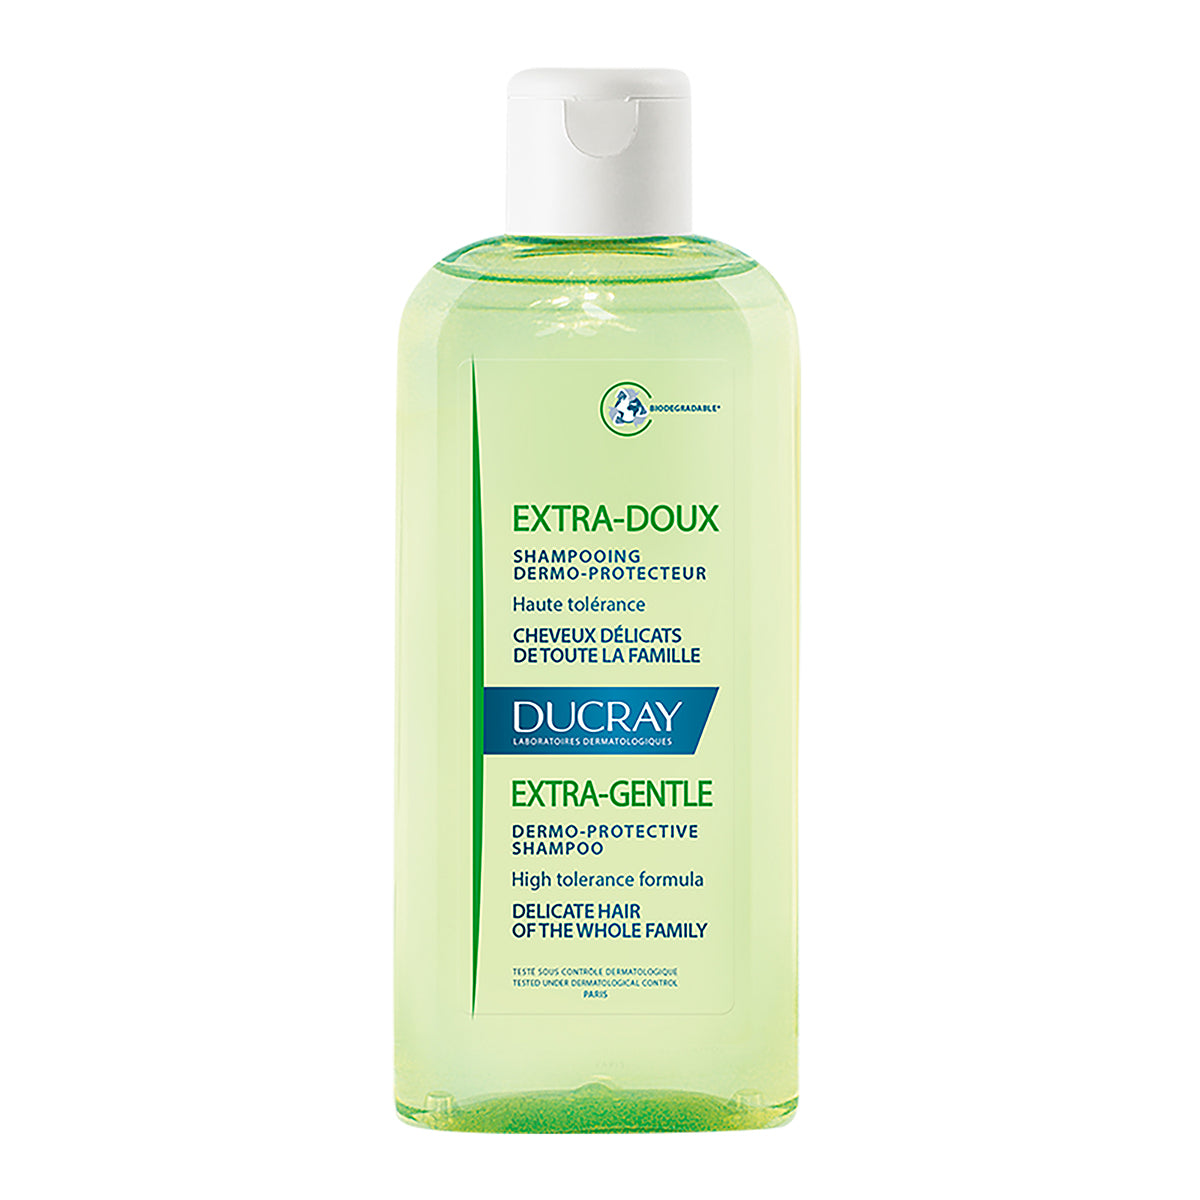 Ducray extra suave shampoo dermoprotector 200ml.